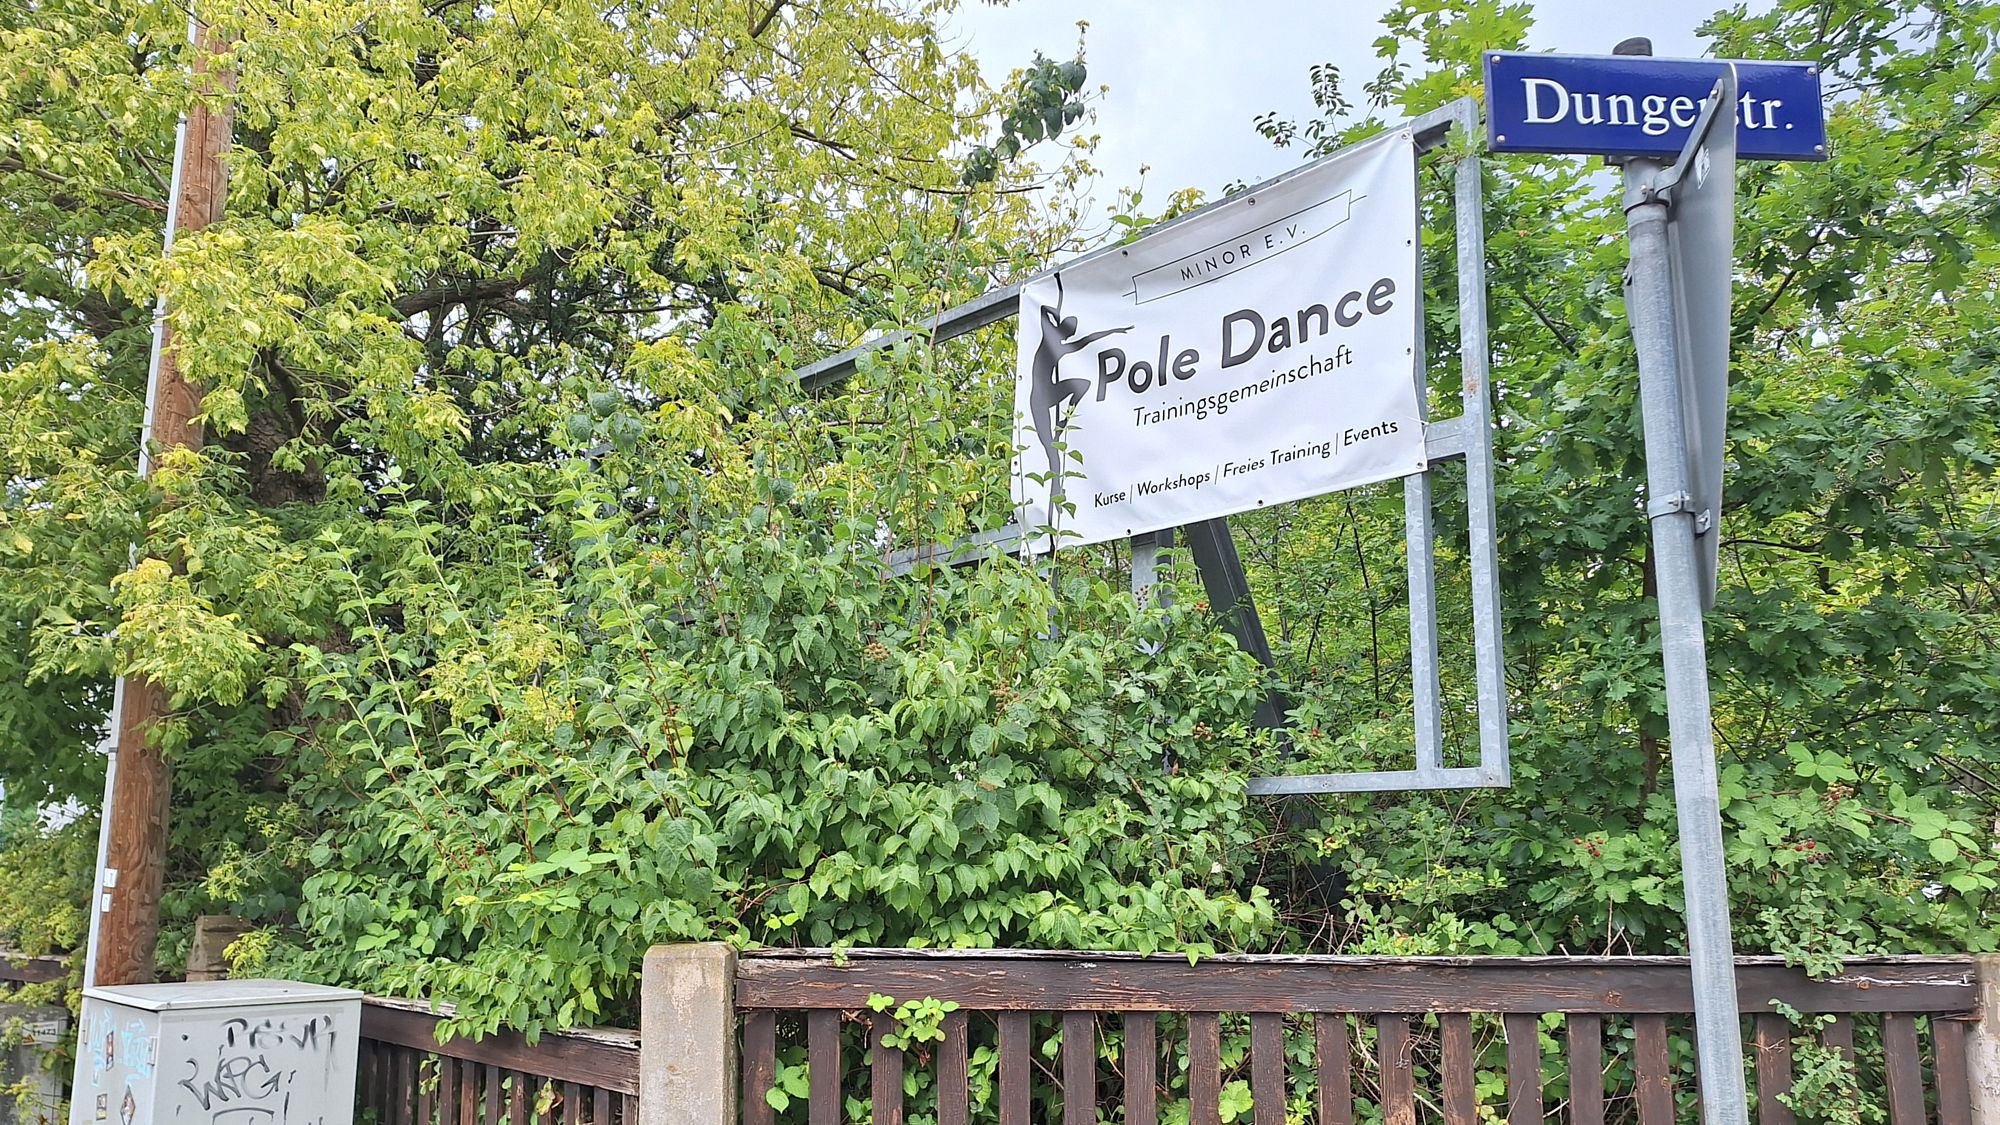 Trainingsgemeinschaft Pole Dance an der Dunger-/Ecke Rankestraße - Foto: J. Gawlik